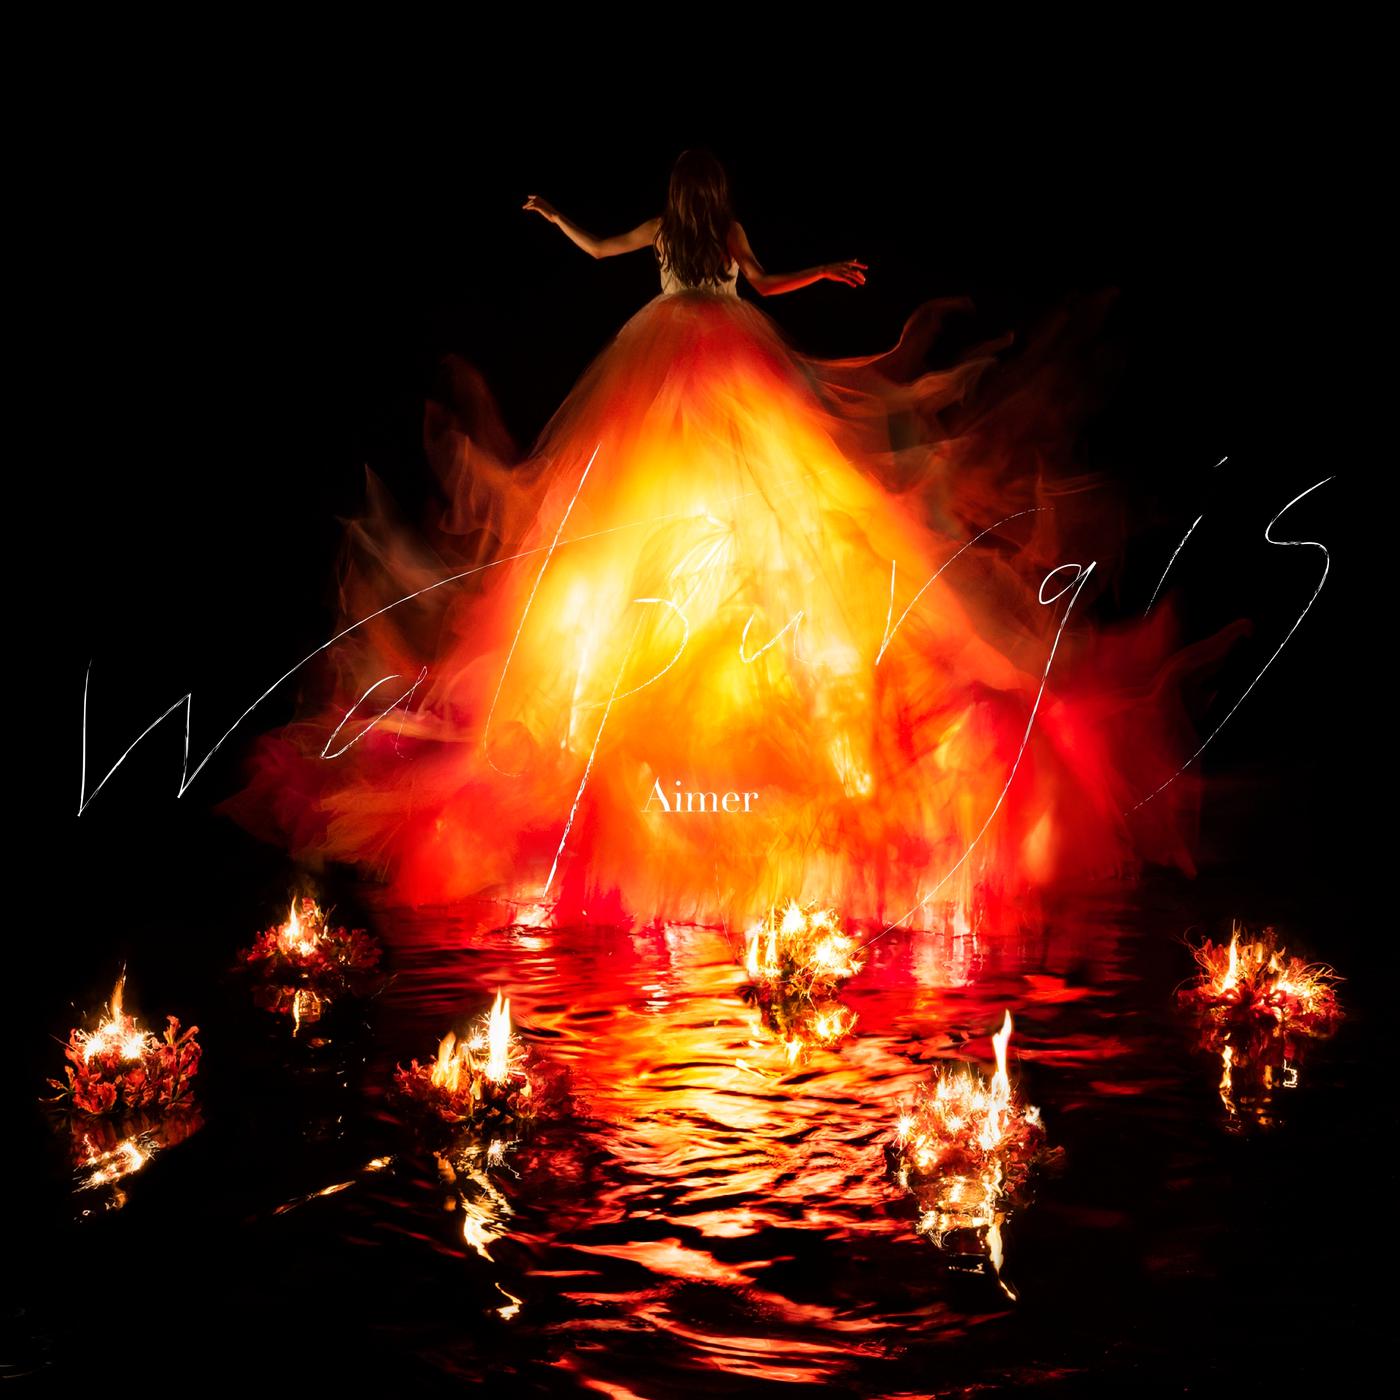 トリル歌词 歌手Aimer-专辑Walpurgis-单曲《トリル》LRC歌词下载